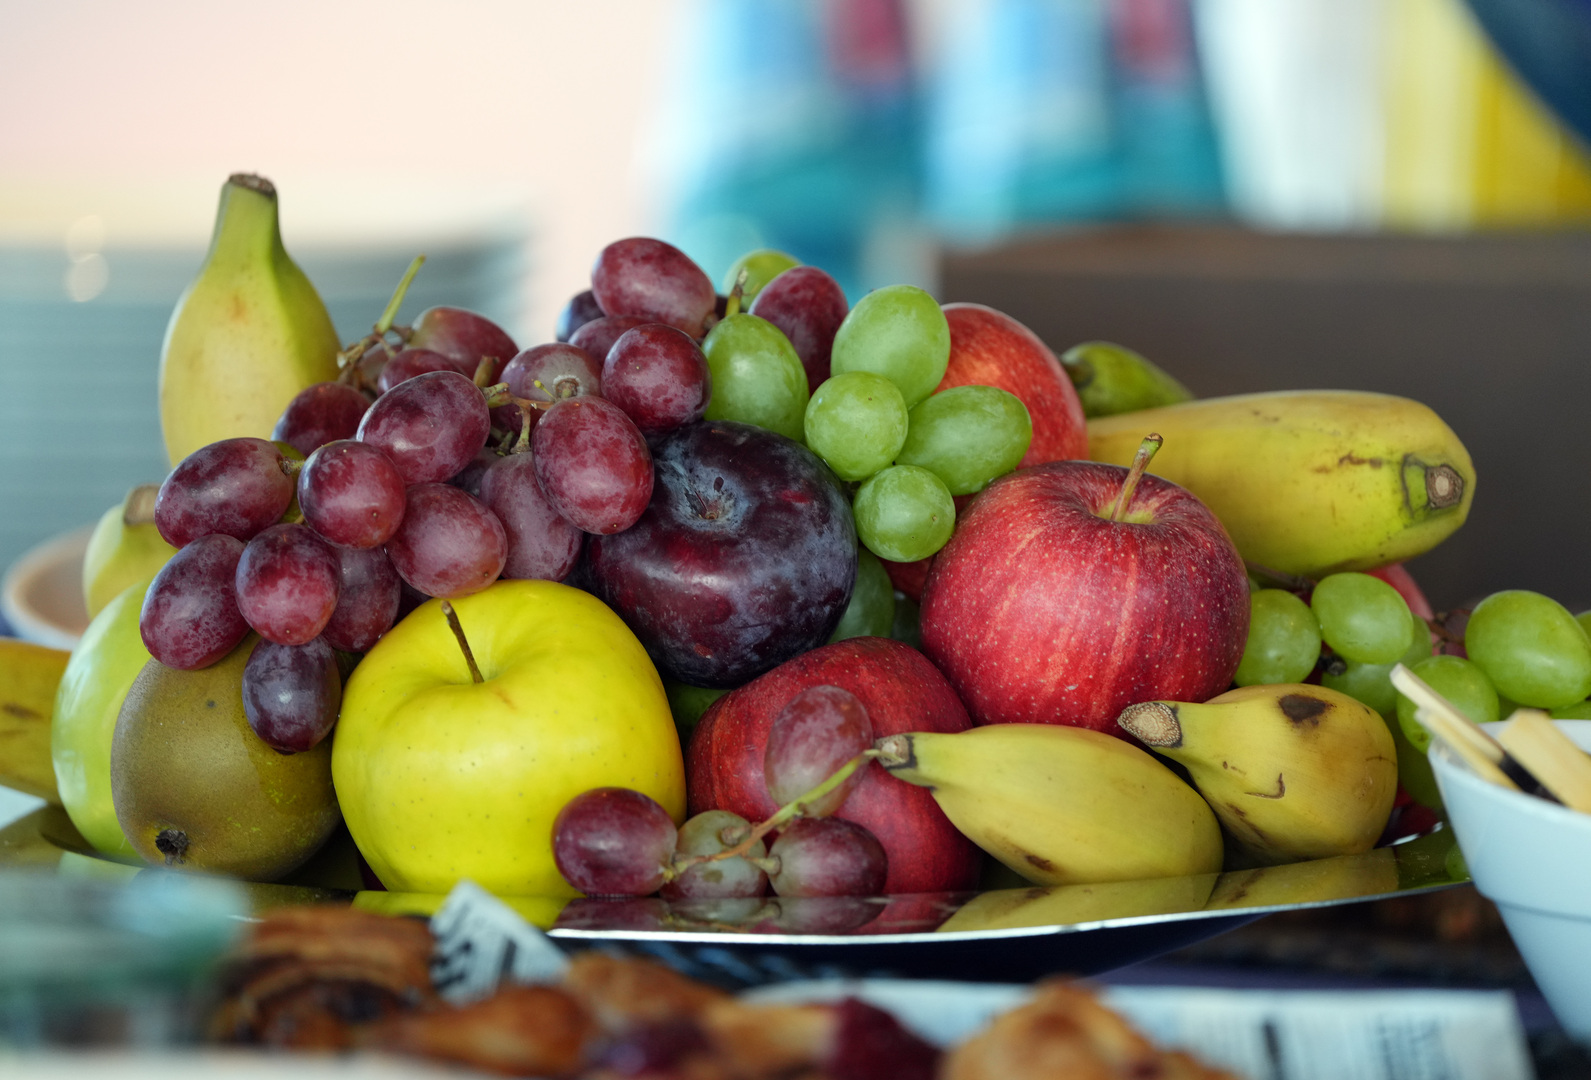 ما خطورة إفراط كبار السن في تناول الفاكهة؟